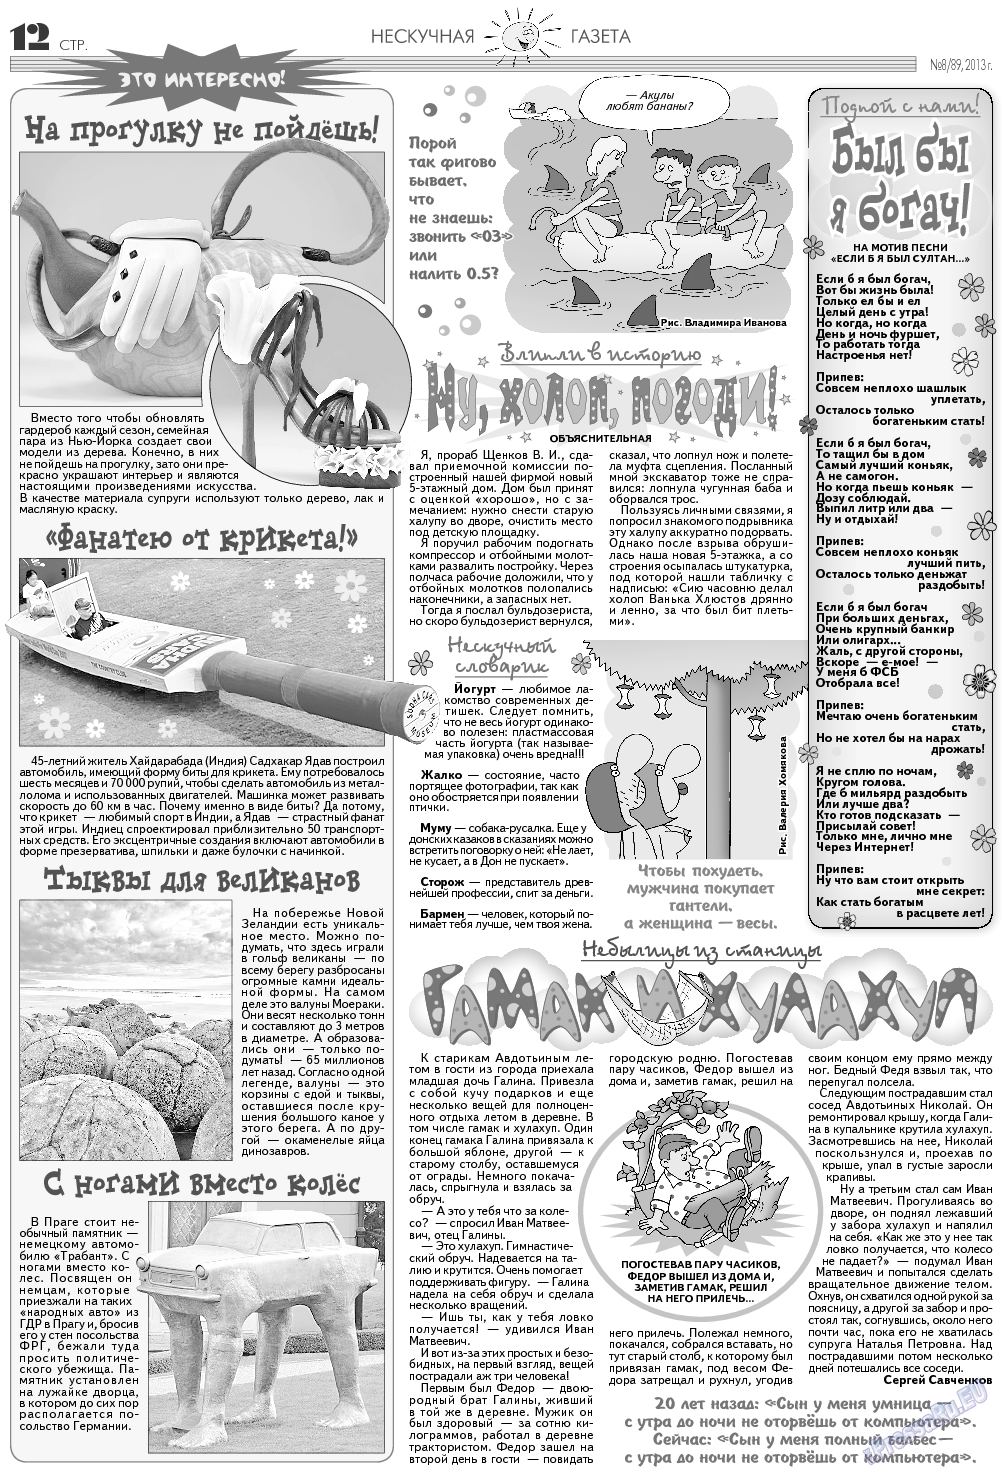 Нескучная газета (журнал). 2013 год, номер 8, стр. 12